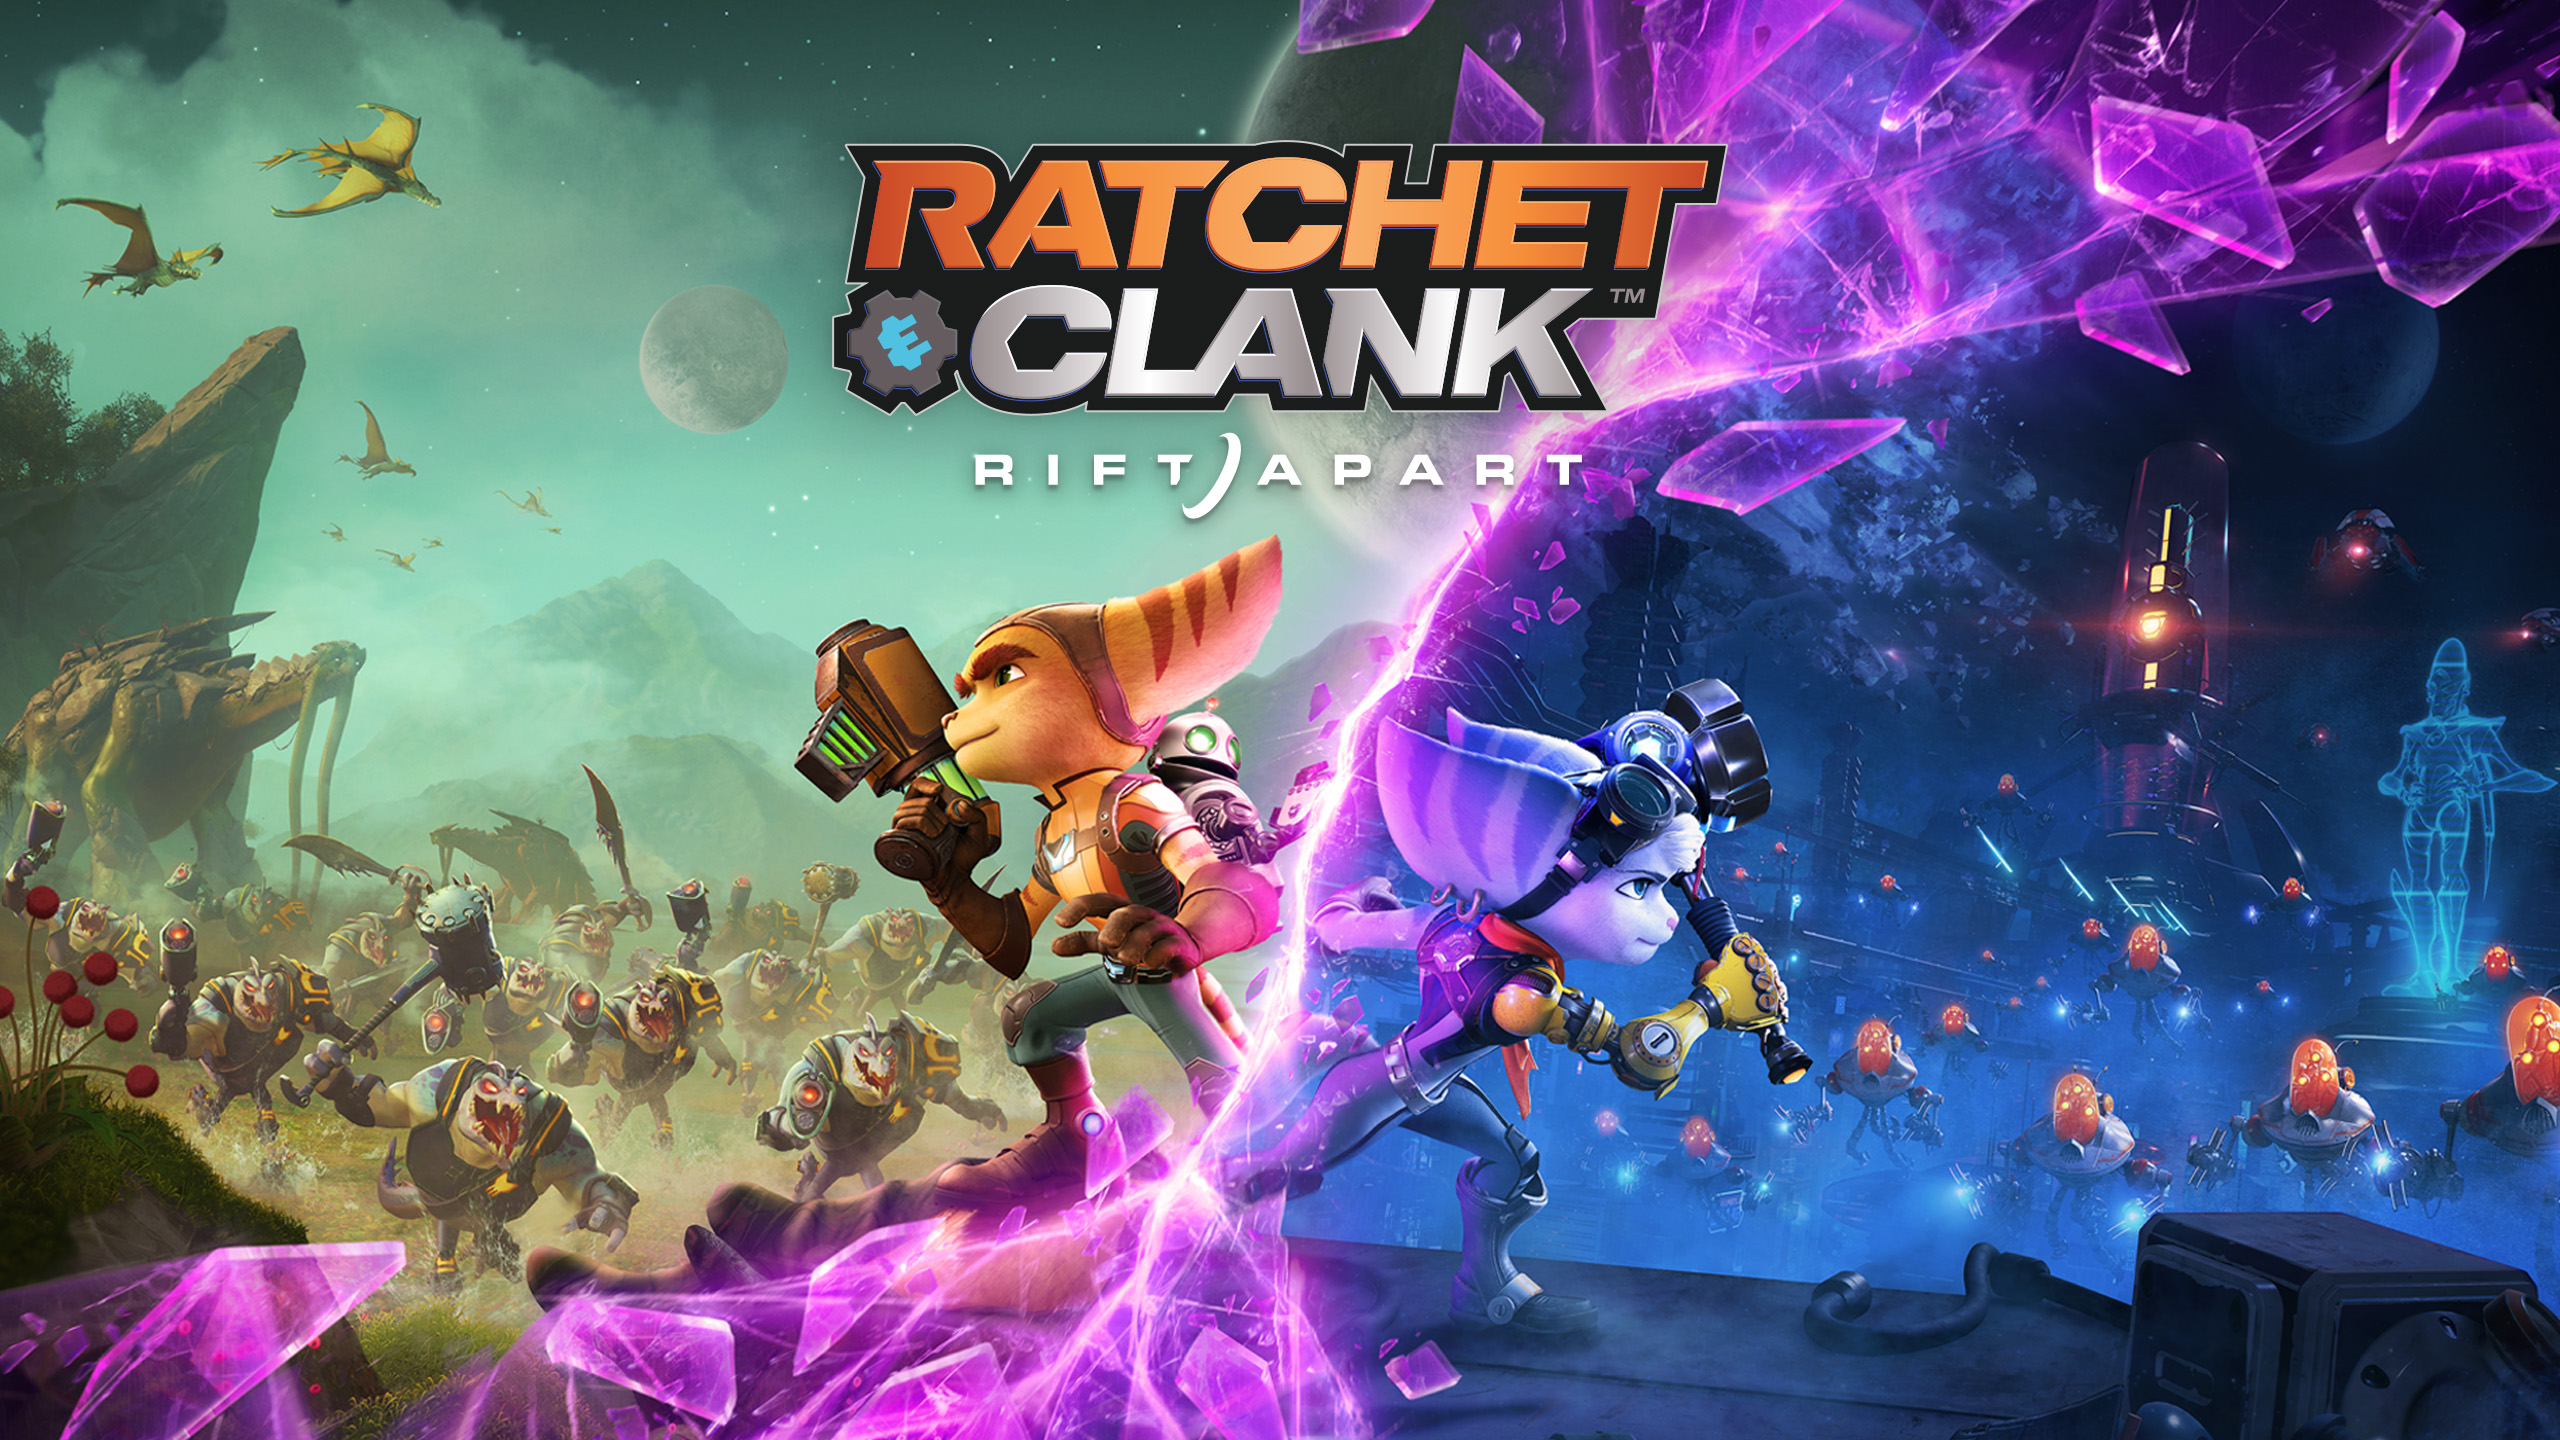 Ratchet & Clank: Rift Apart ИГРОМУЛЬФИЛЬМ ►#3 Прохождение без комментариев (Русская озвучка)